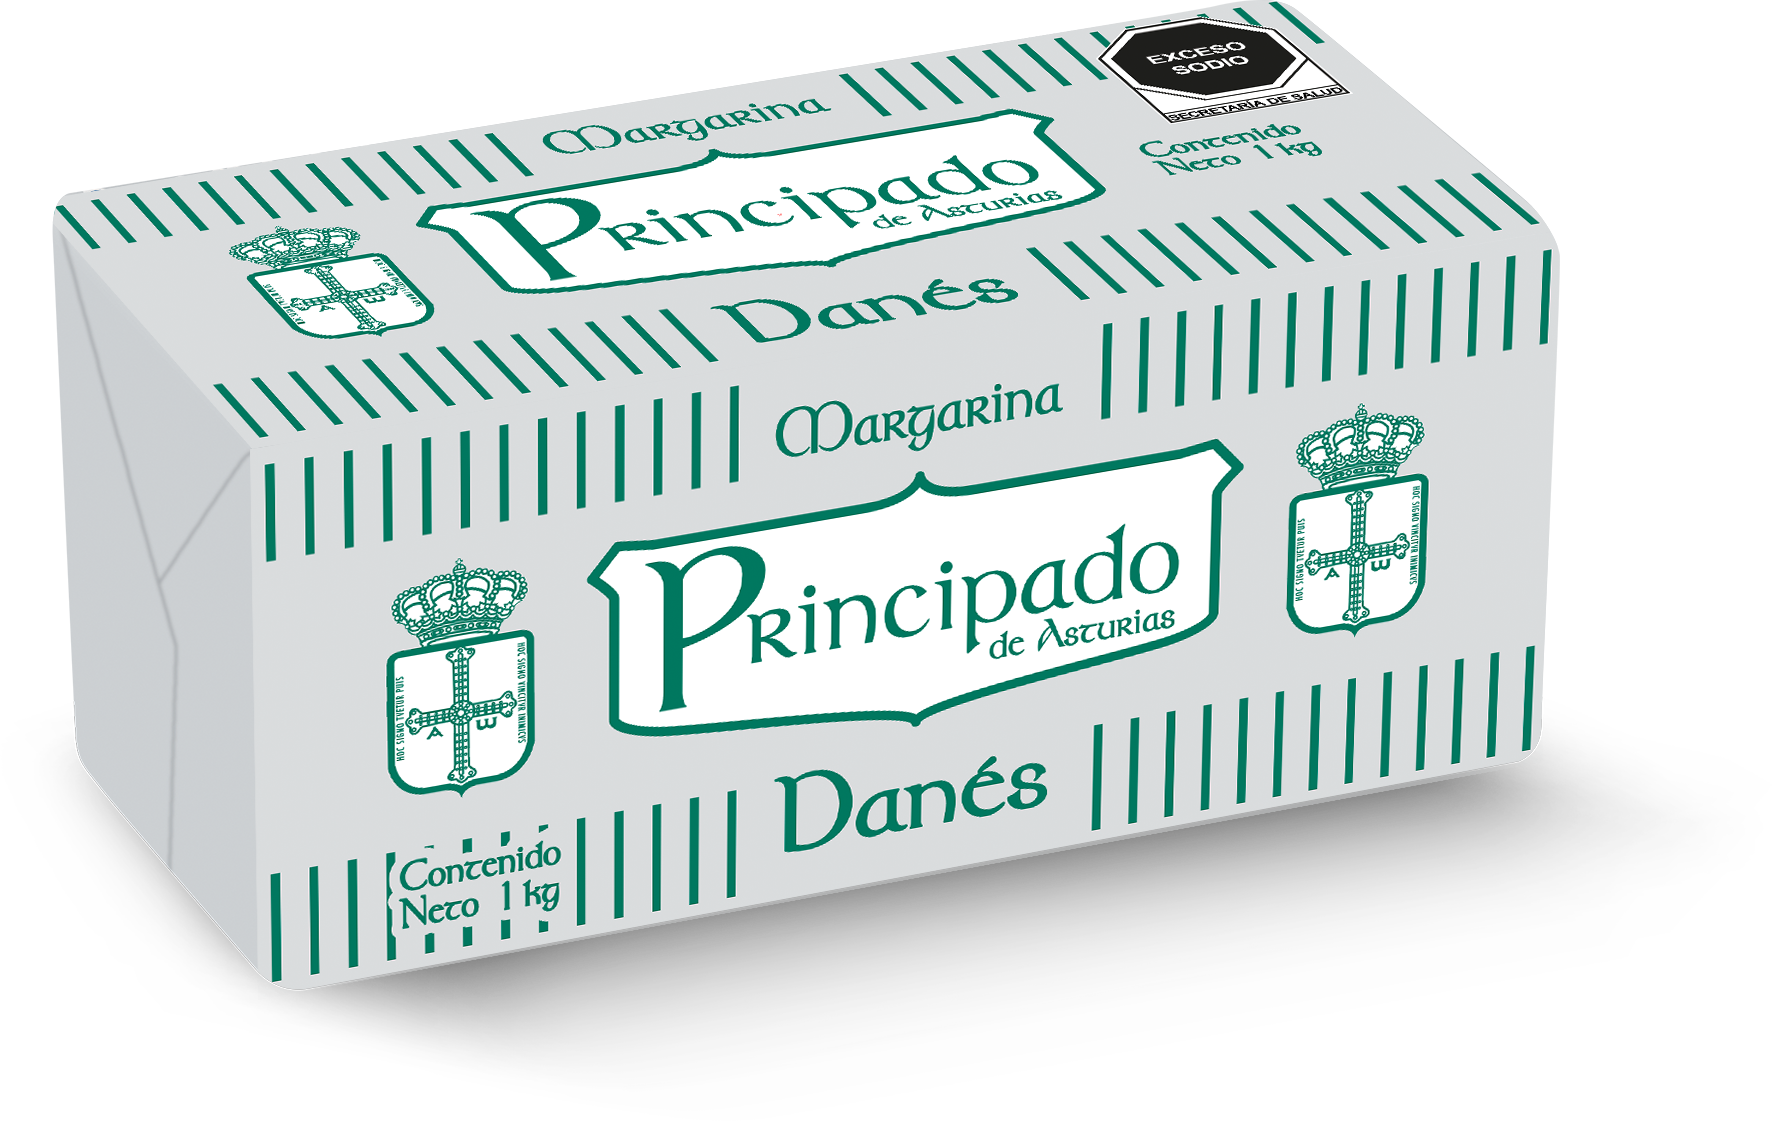 17  |  Asturias Danés
Caja de 10 kg (10 barras de 1 kg)